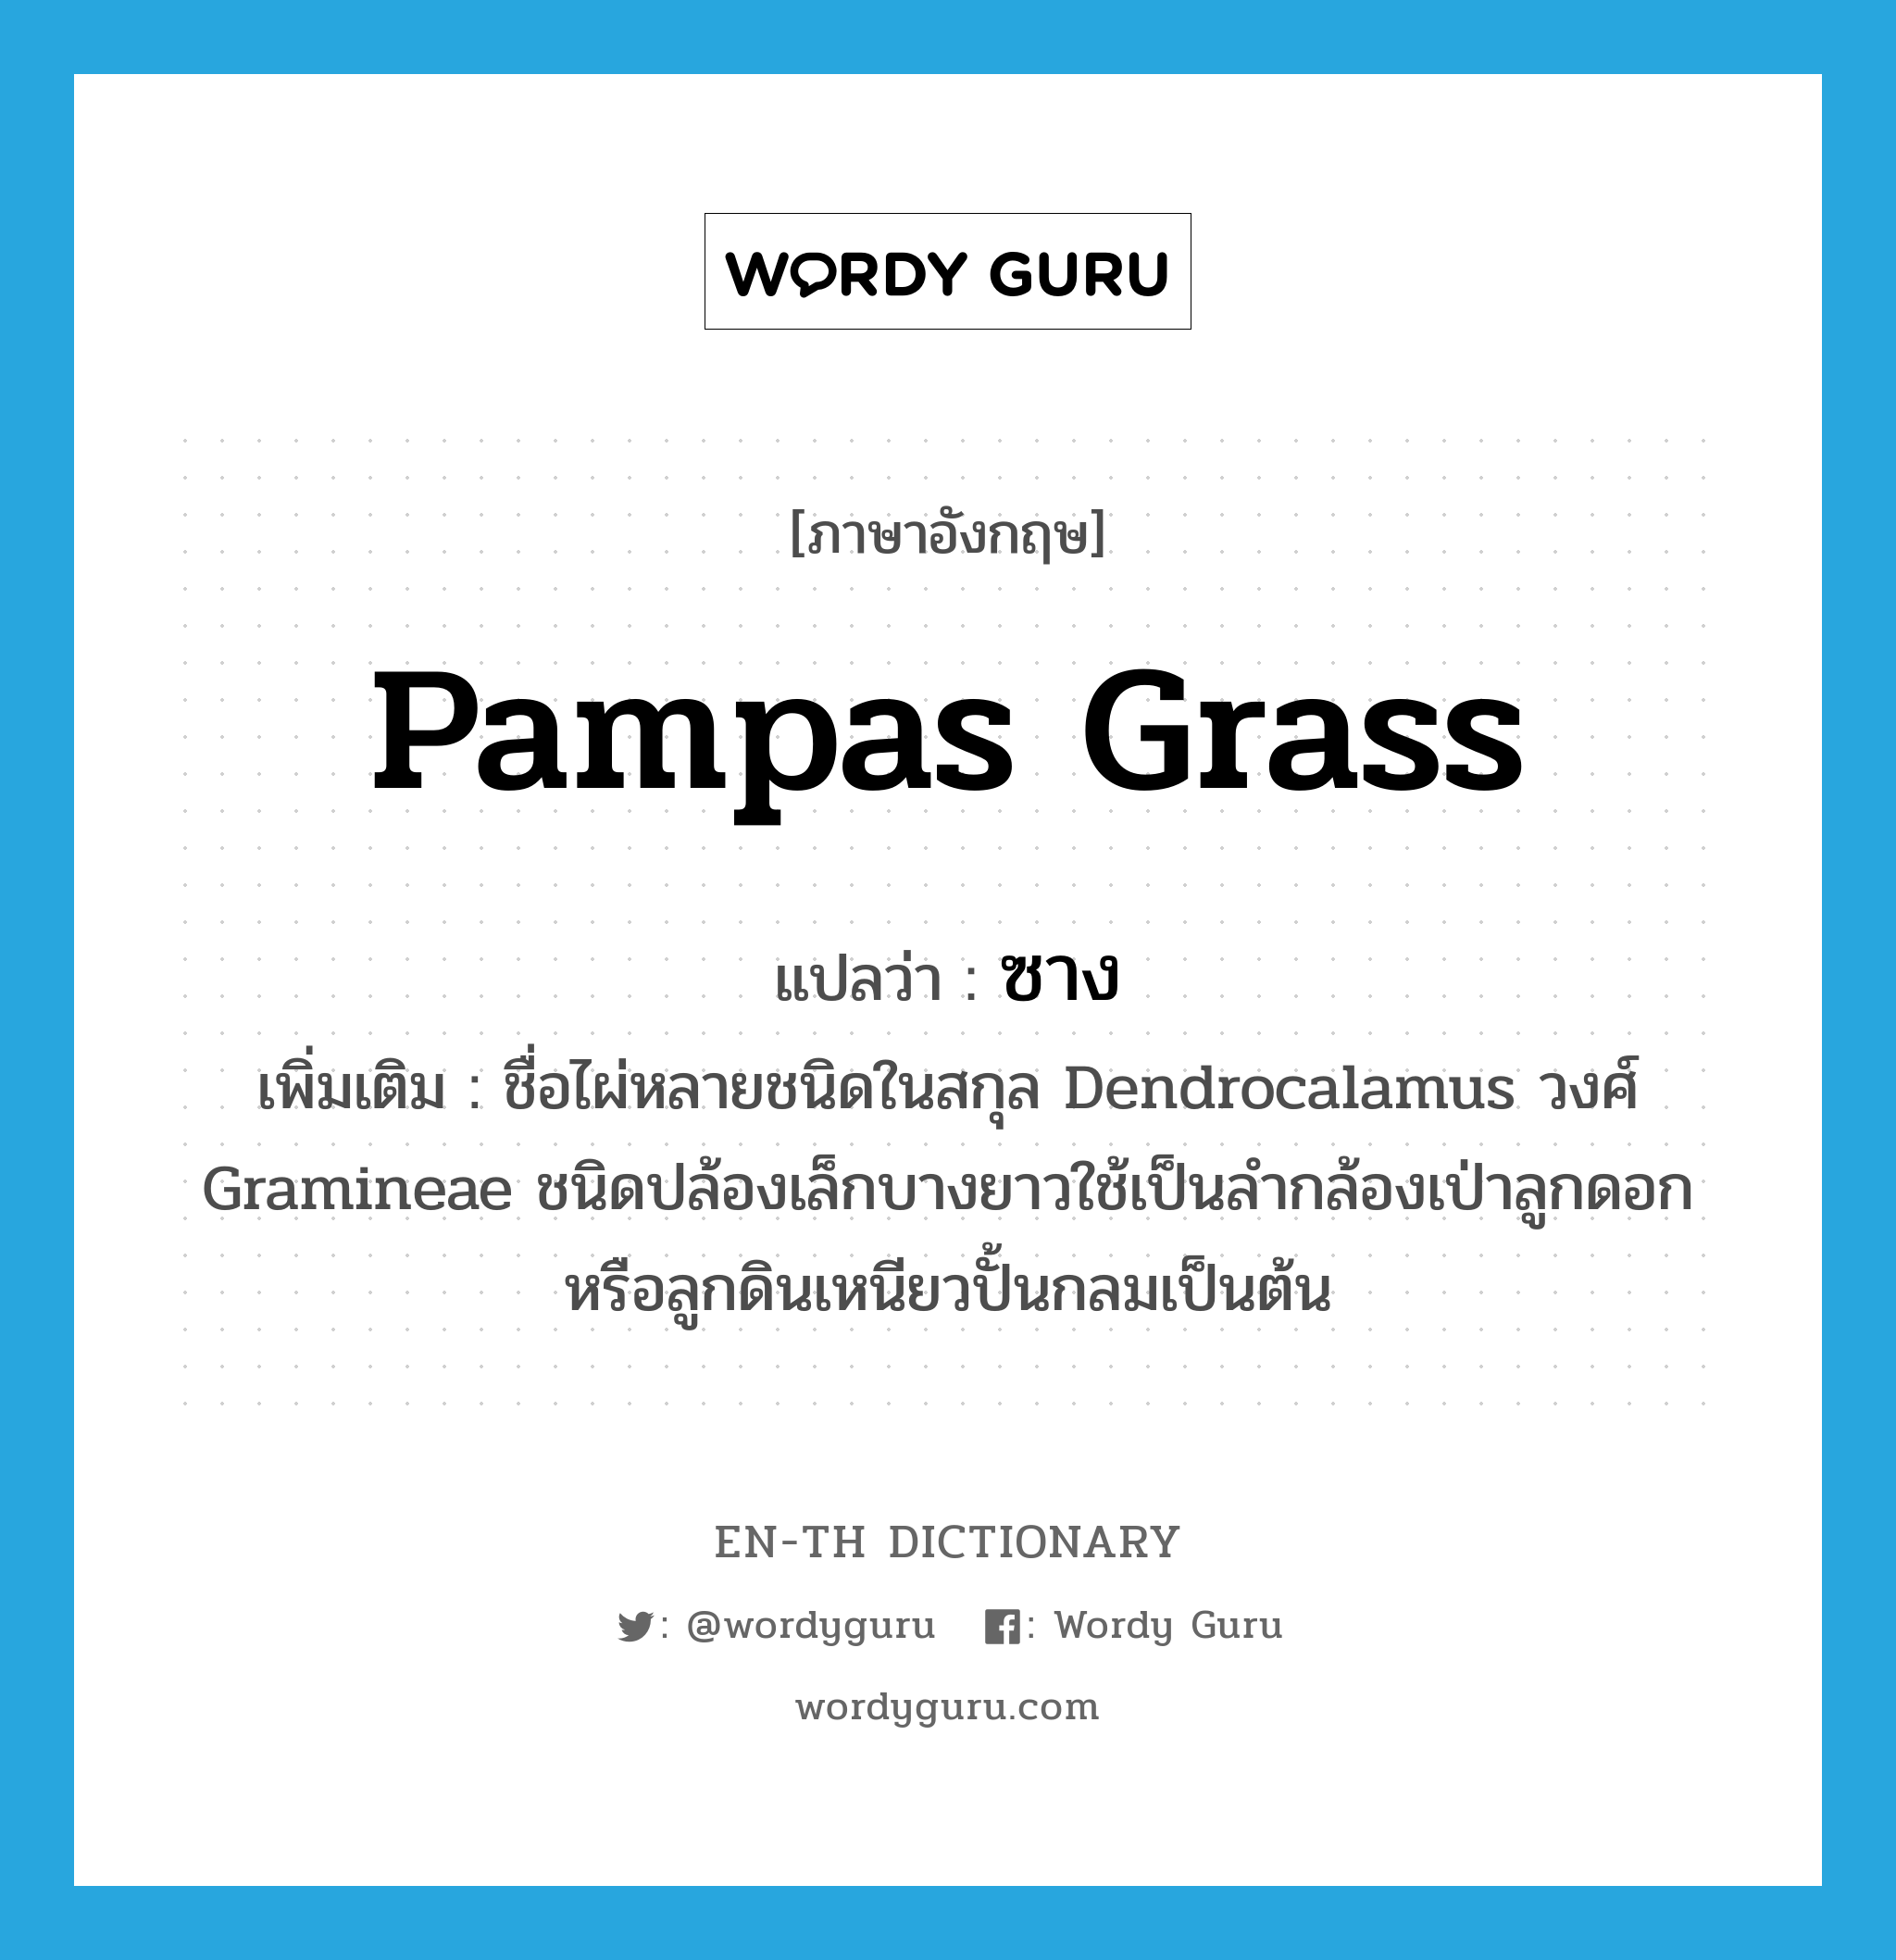 ซาง ภาษาอังกฤษ?, คำศัพท์ภาษาอังกฤษ ซาง แปลว่า pampas grass ประเภท N เพิ่มเติม ชื่อไผ่หลายชนิดในสกุล Dendrocalamus วงศ์ Gramineae ชนิดปล้องเล็กบางยาวใช้เป็นลำกล้องเป่าลูกดอก หรือลูกดินเหนียวปั้นกลมเป็นต้น หมวด N